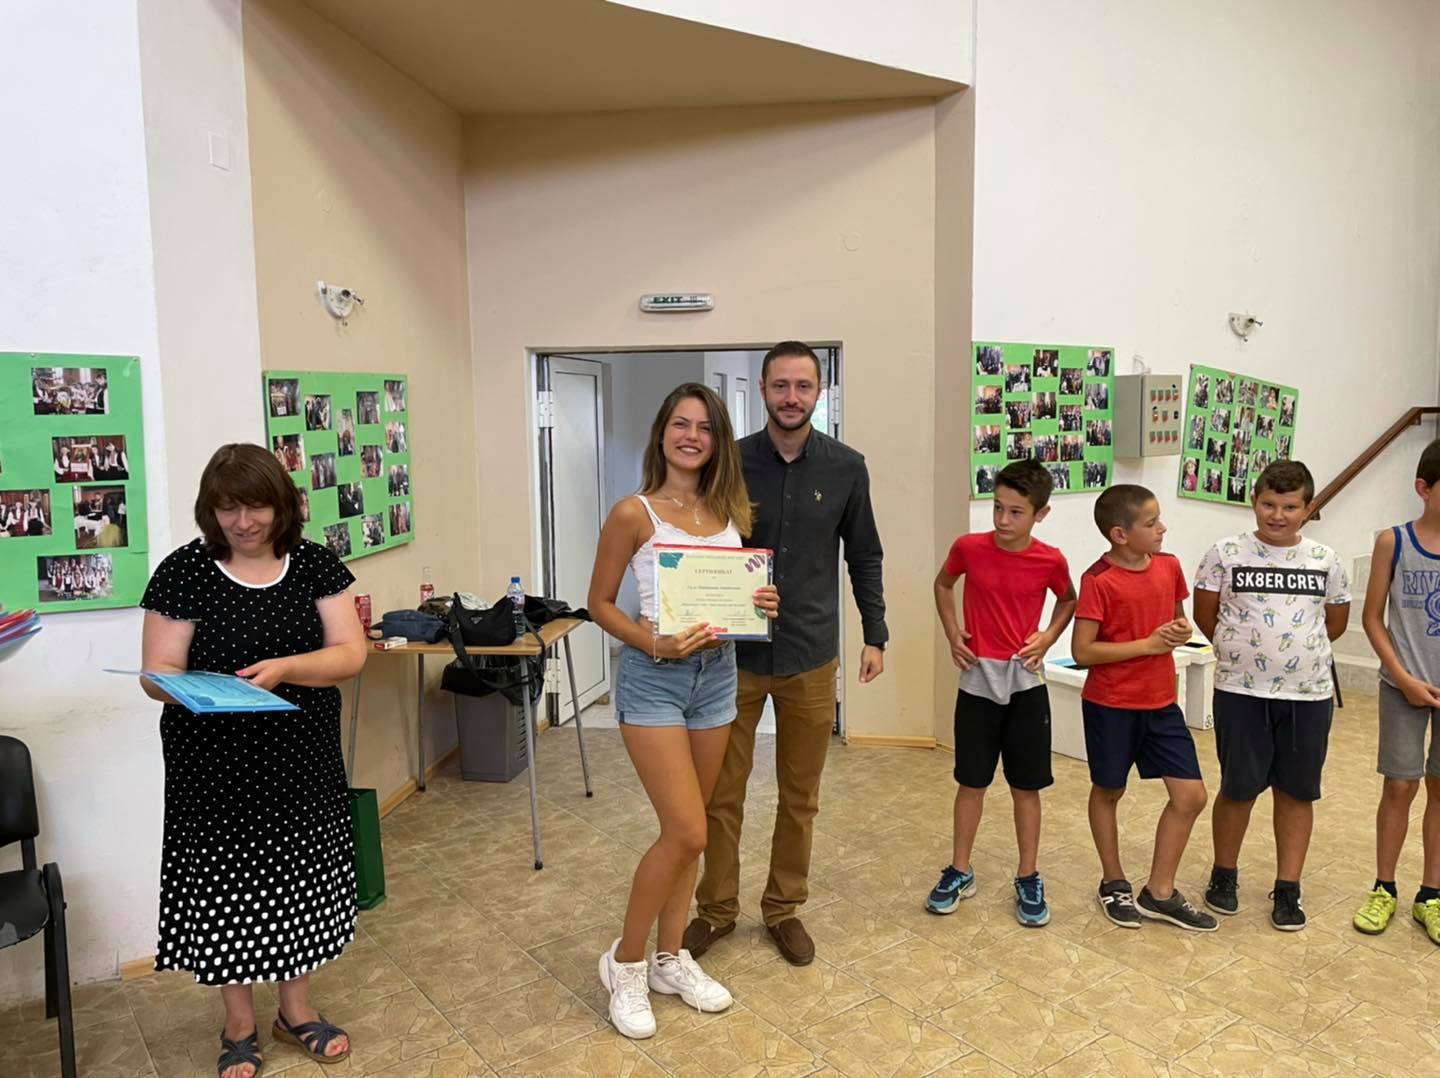 Наградиха участниците в лятното училище по френски език във Враца